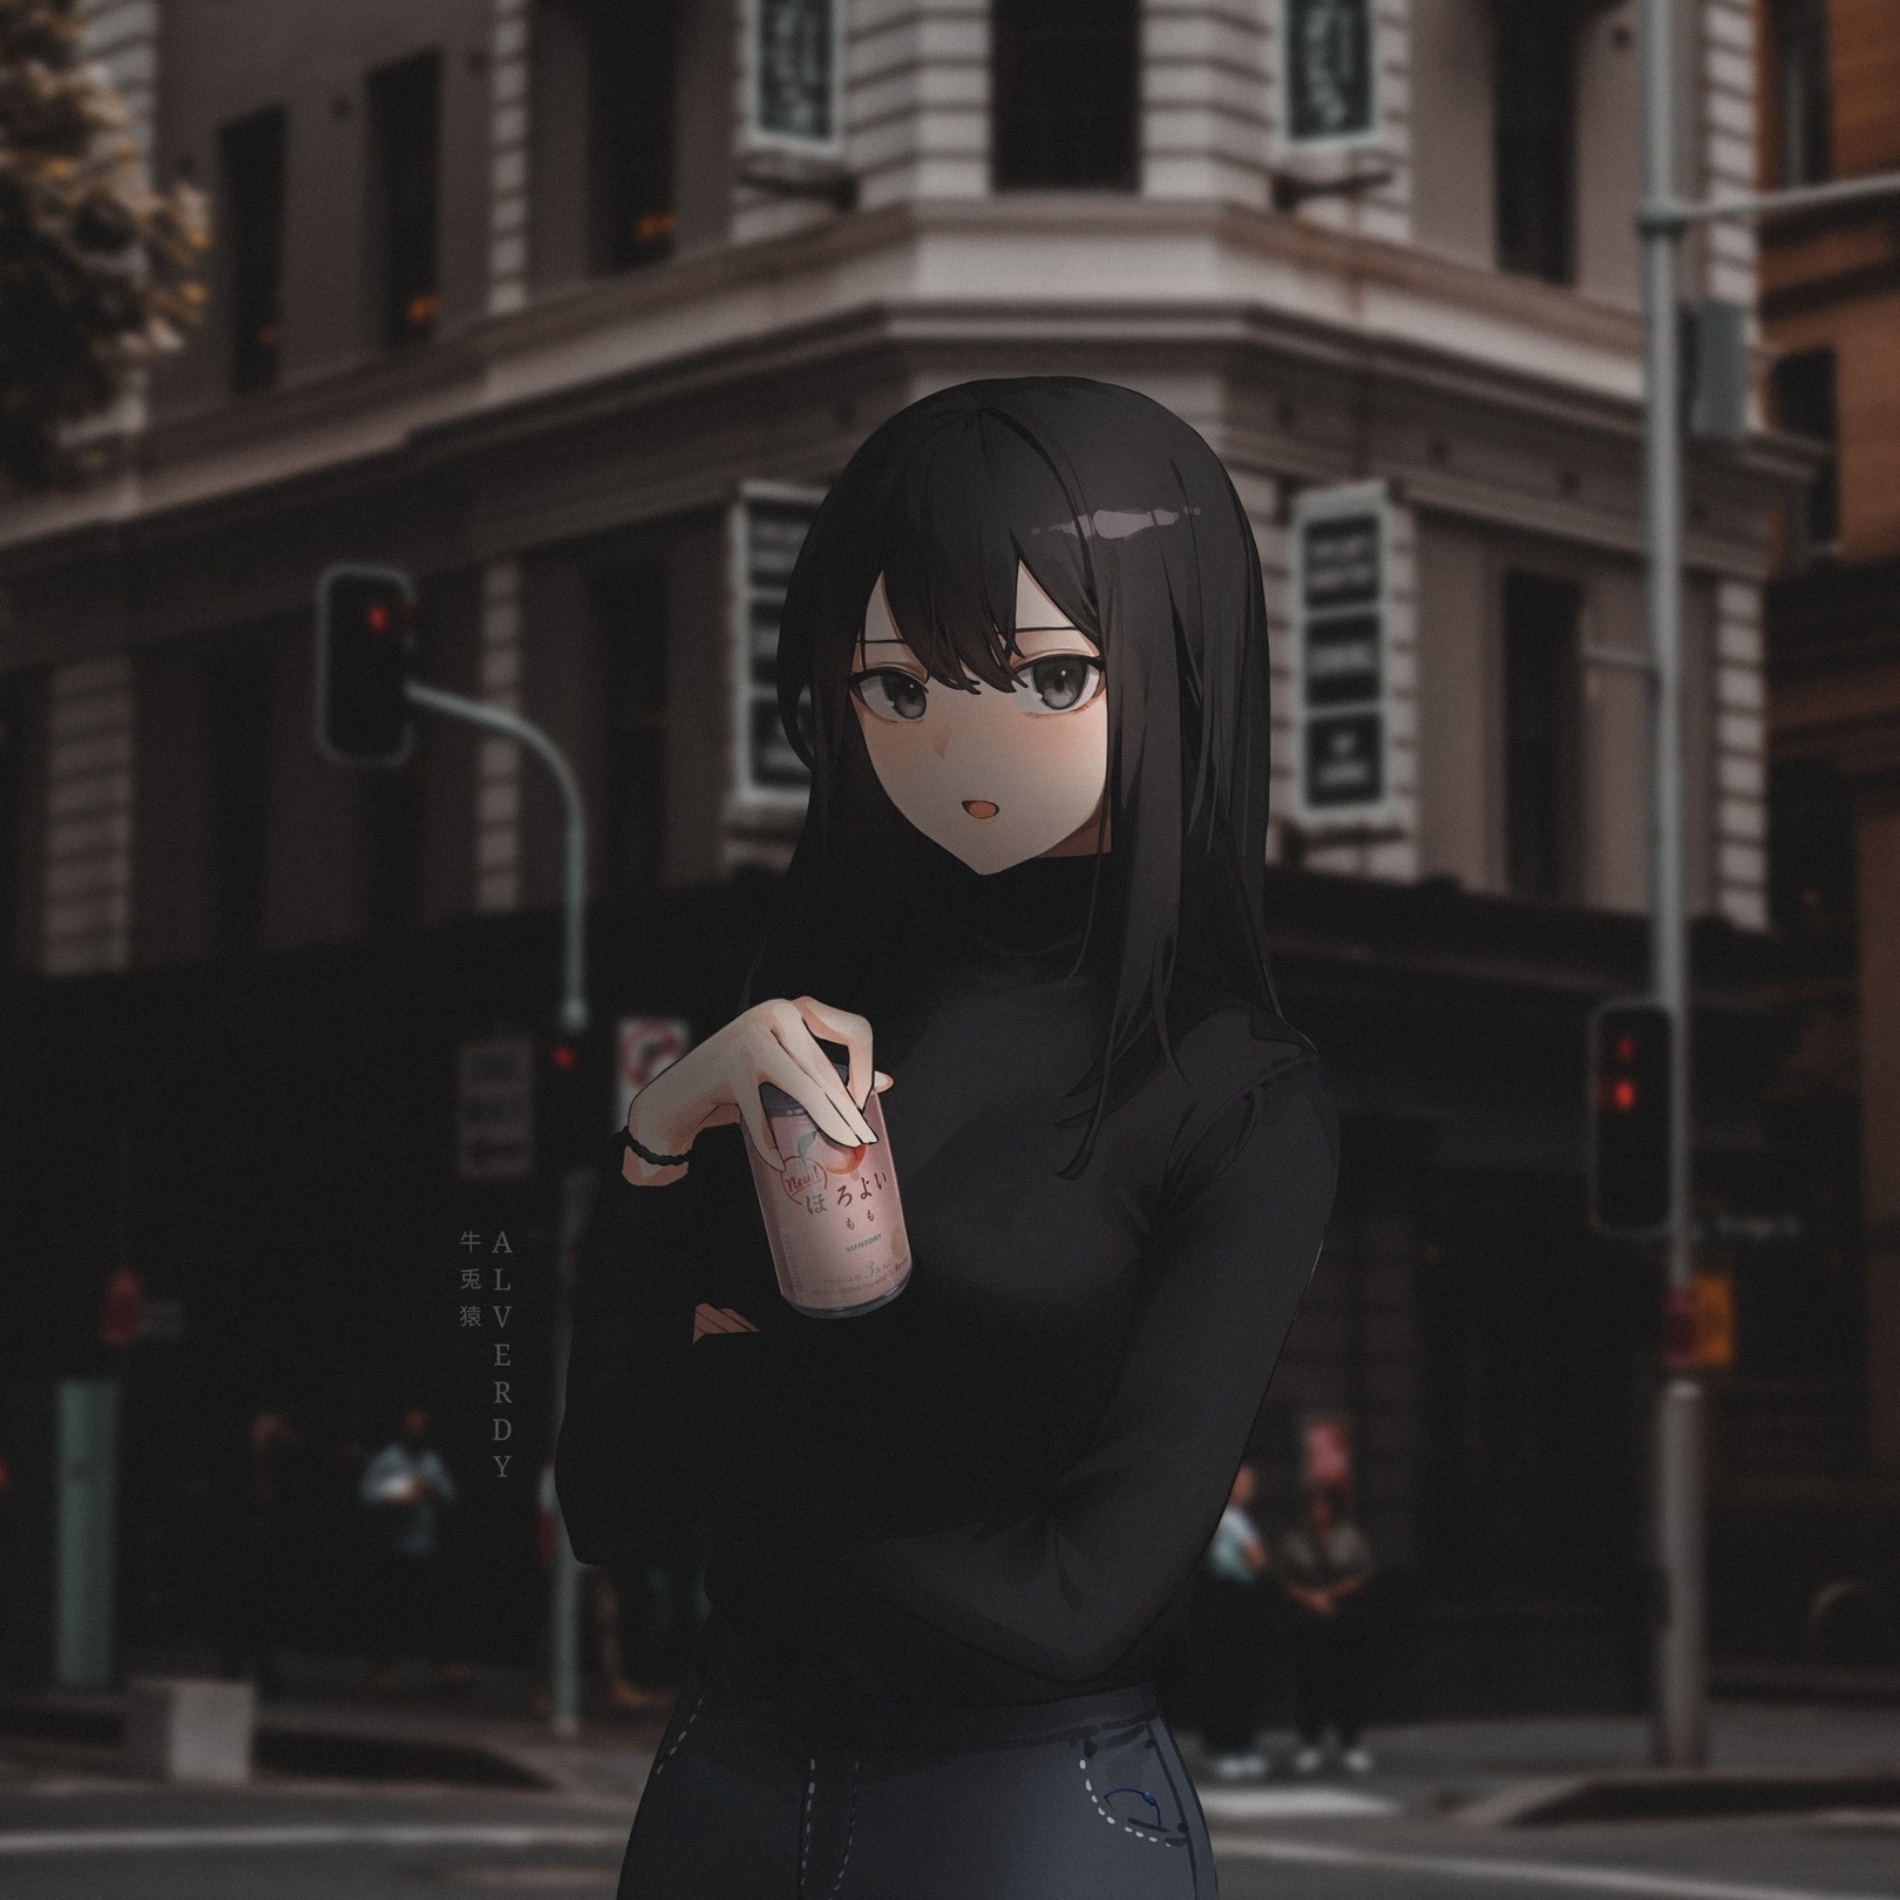 Aesthetic Anime Girl Profile Image